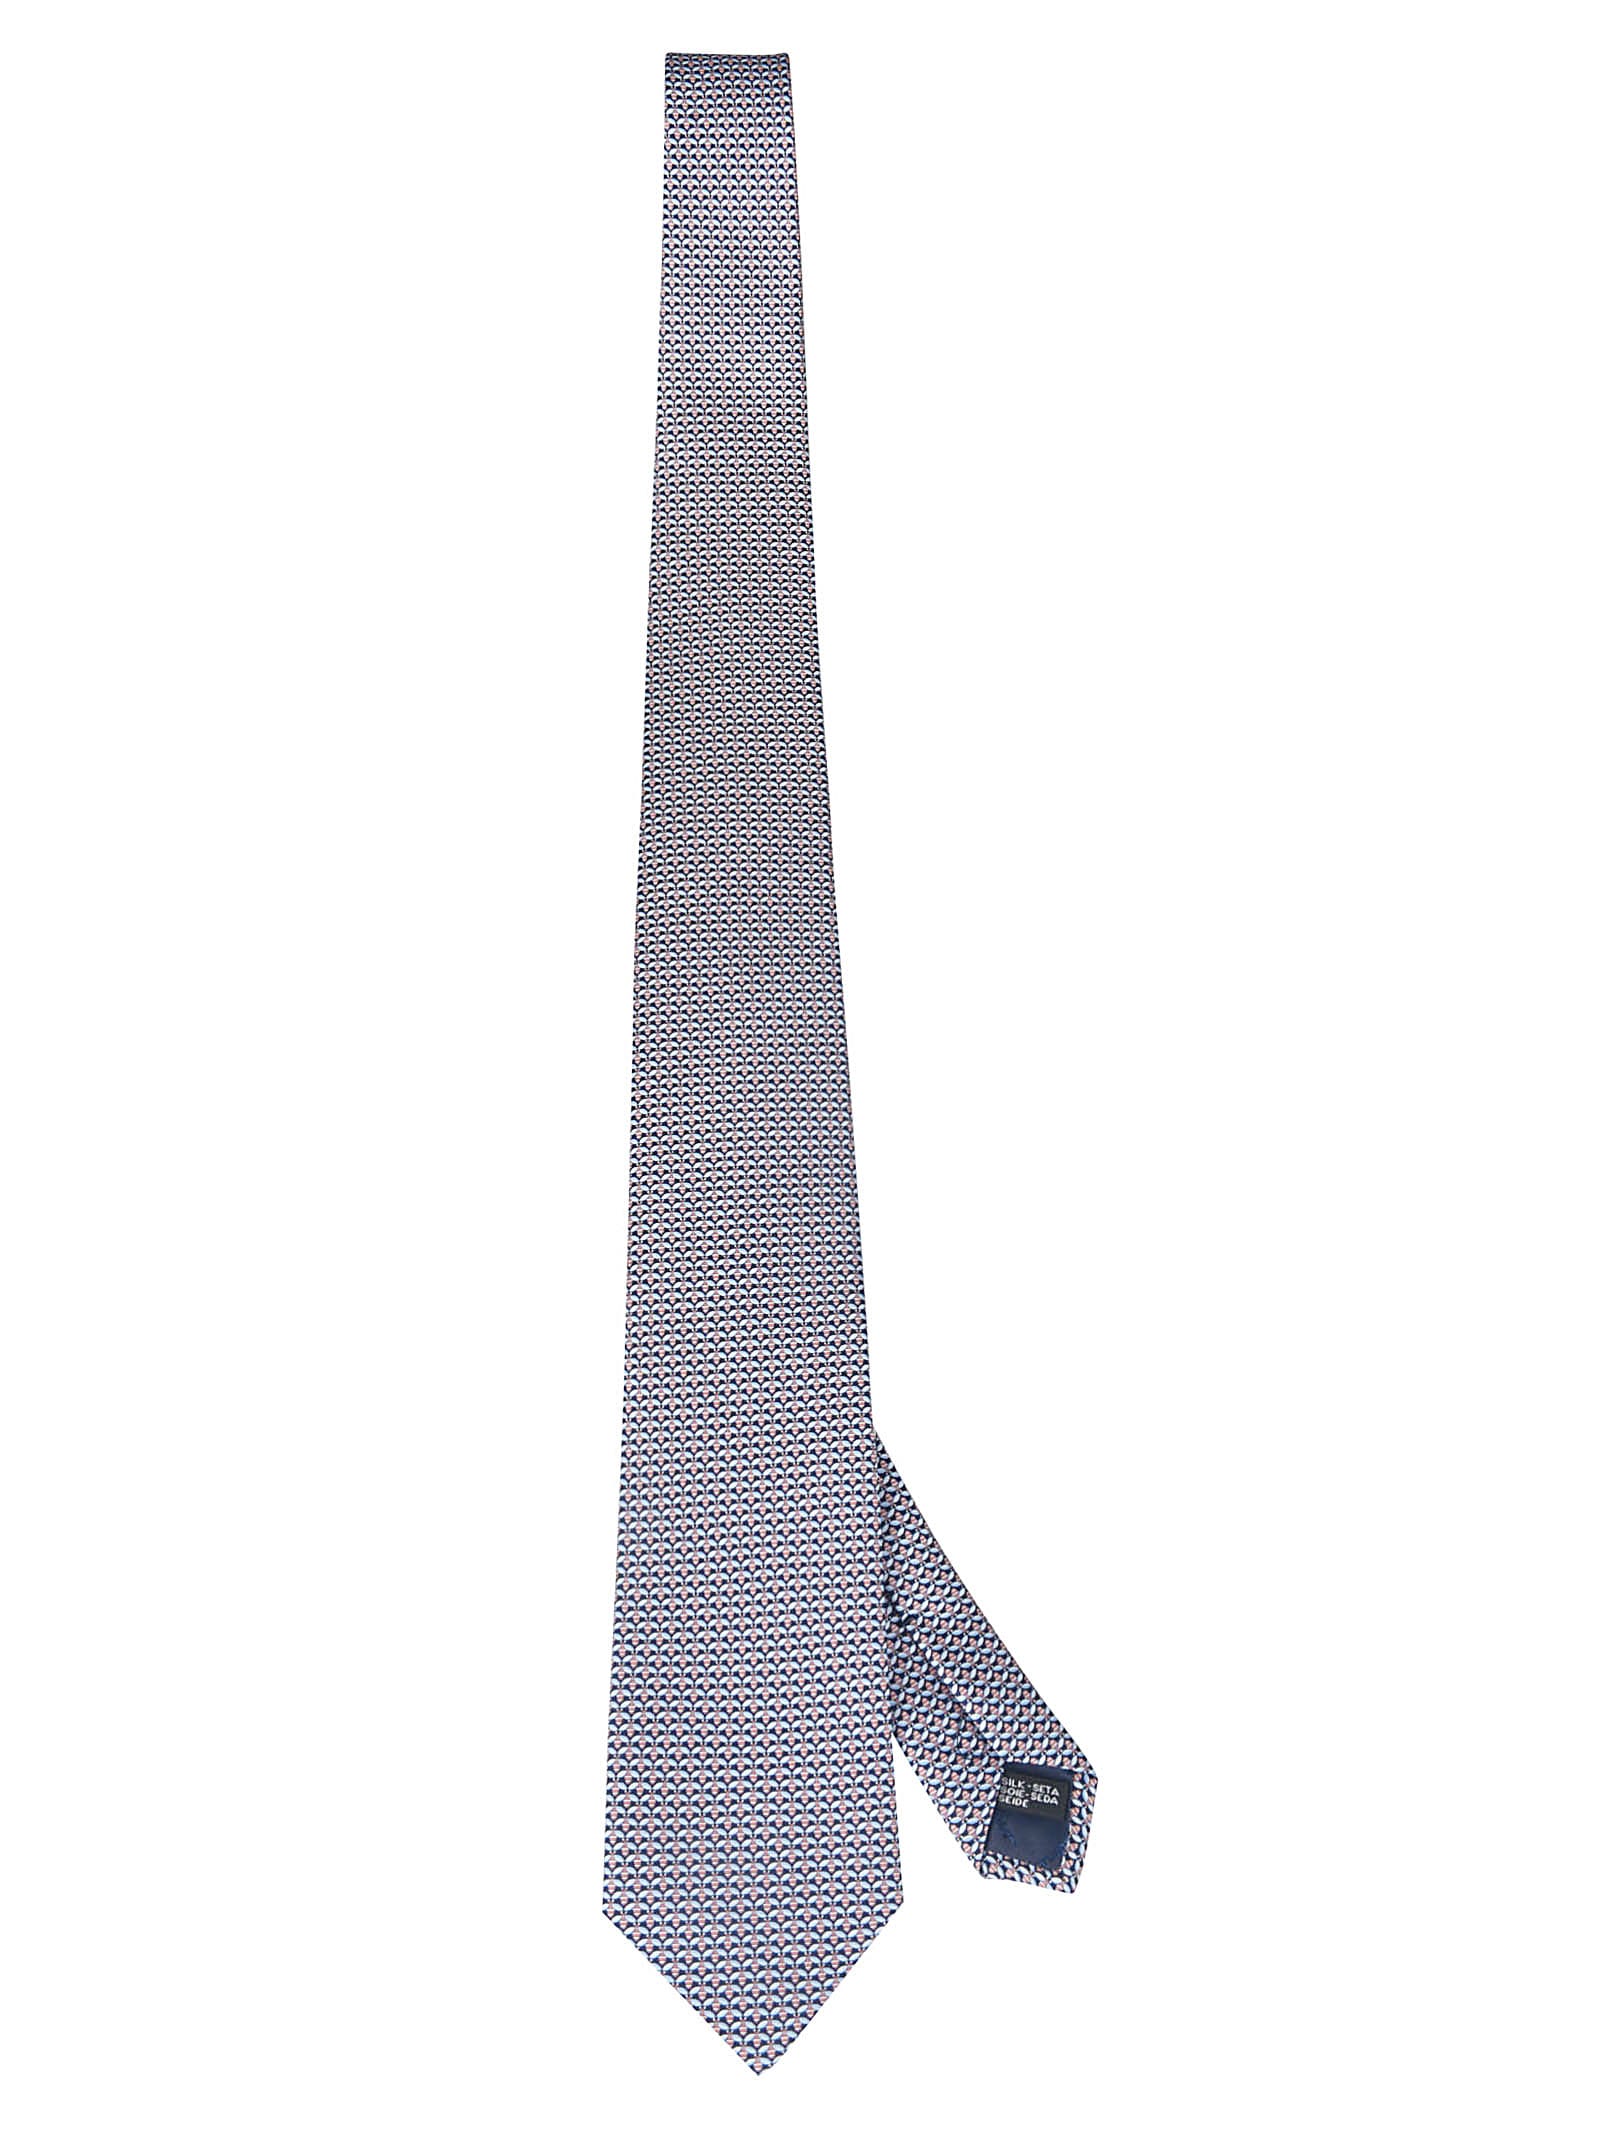 Ferragamo Printed Neck Tie In Navy/coral